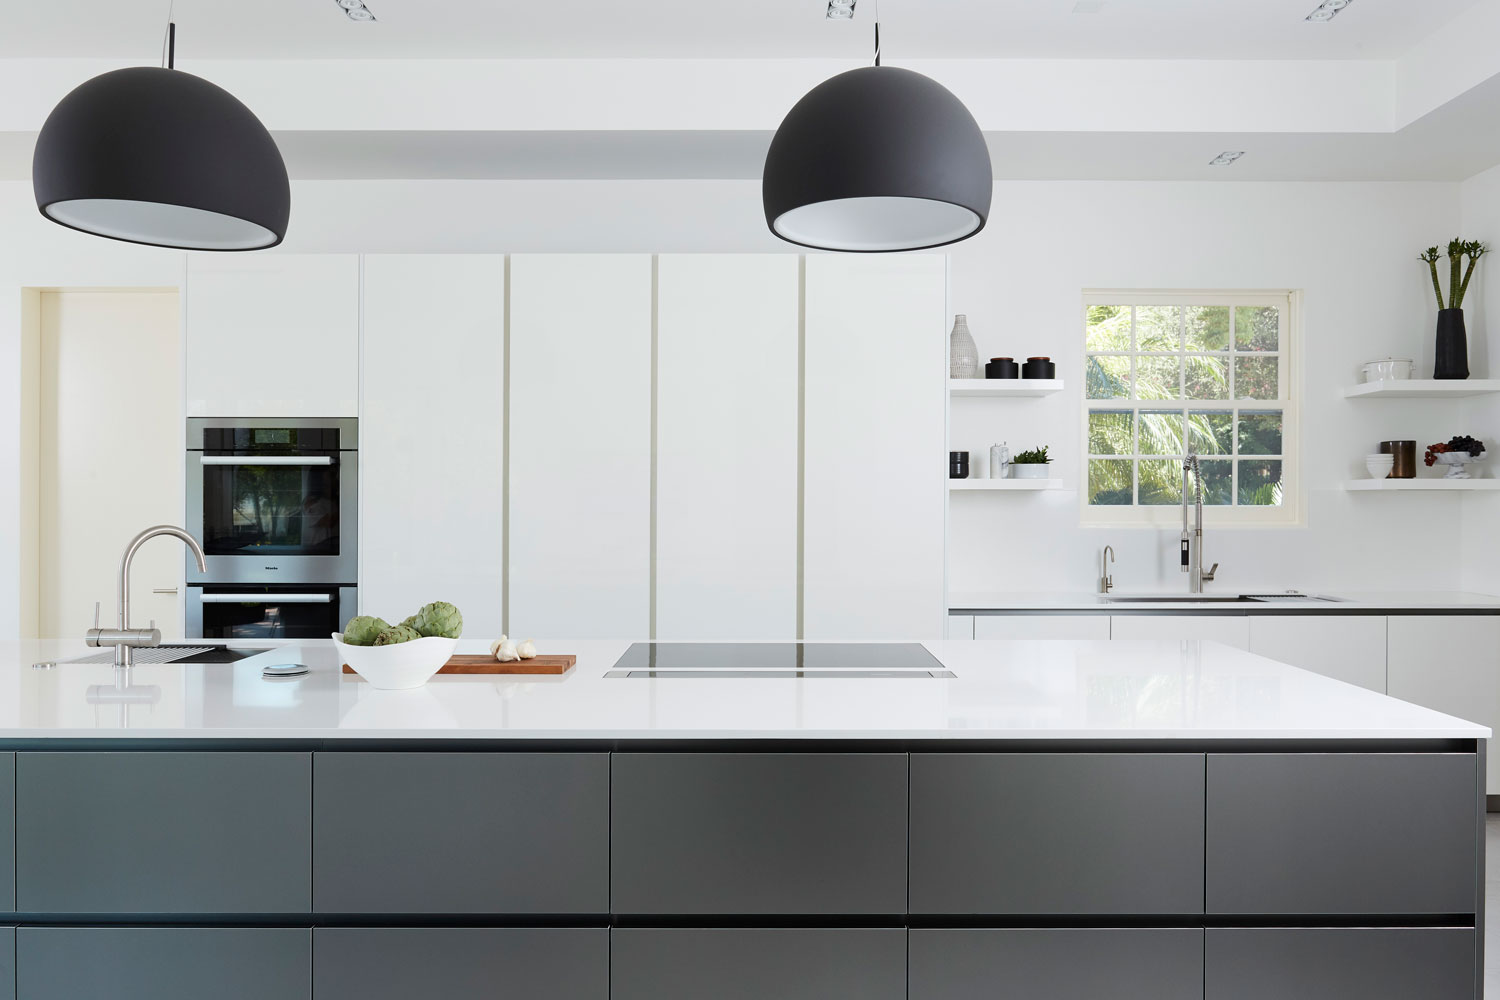 4-Waterford-kitchen-island-modern.jpg